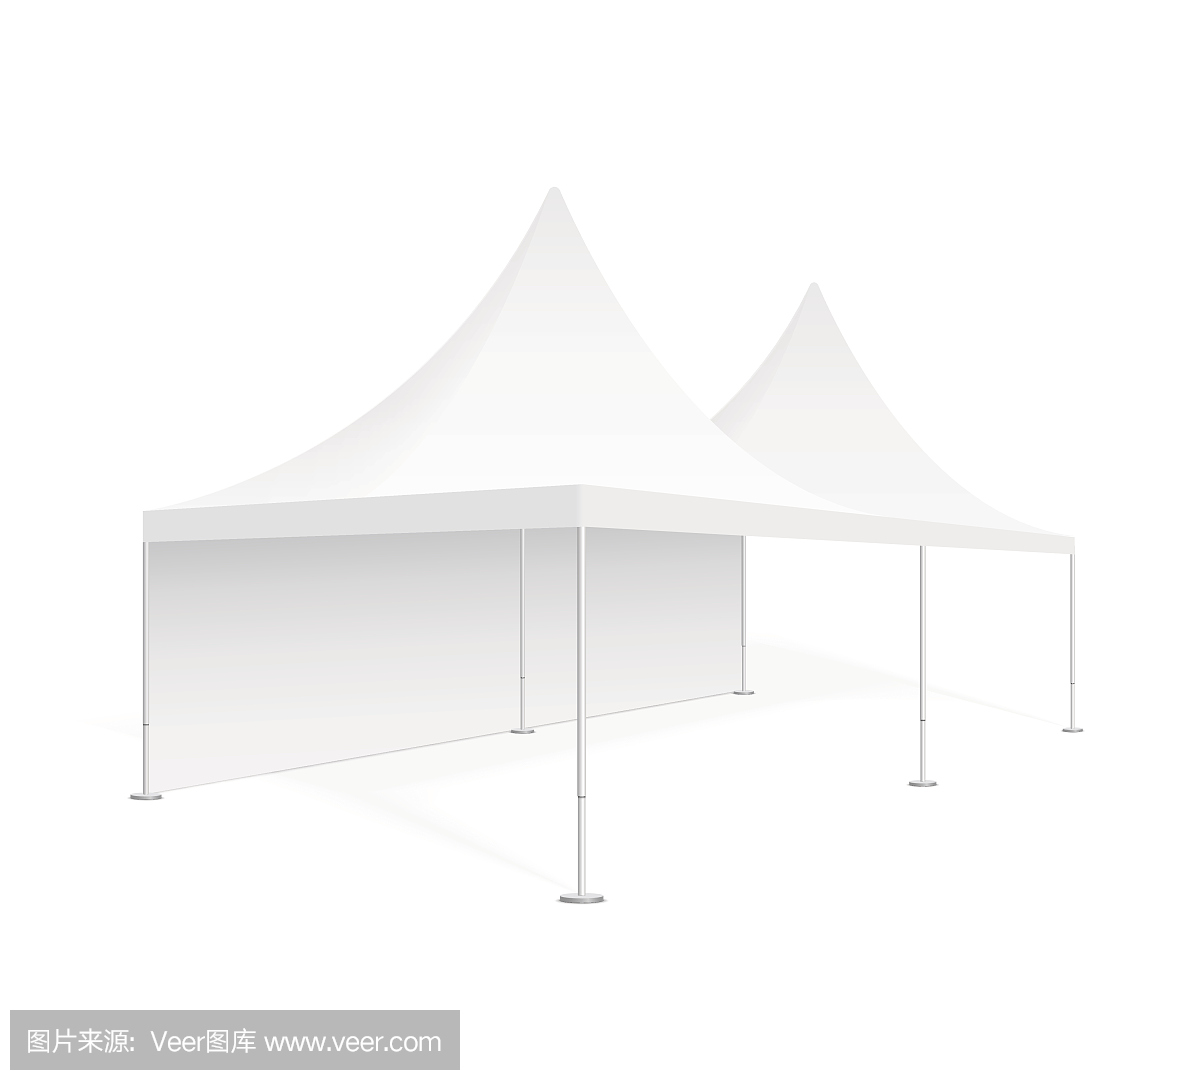 大型移动帐篷用于贸易展览,婚礼和活动。